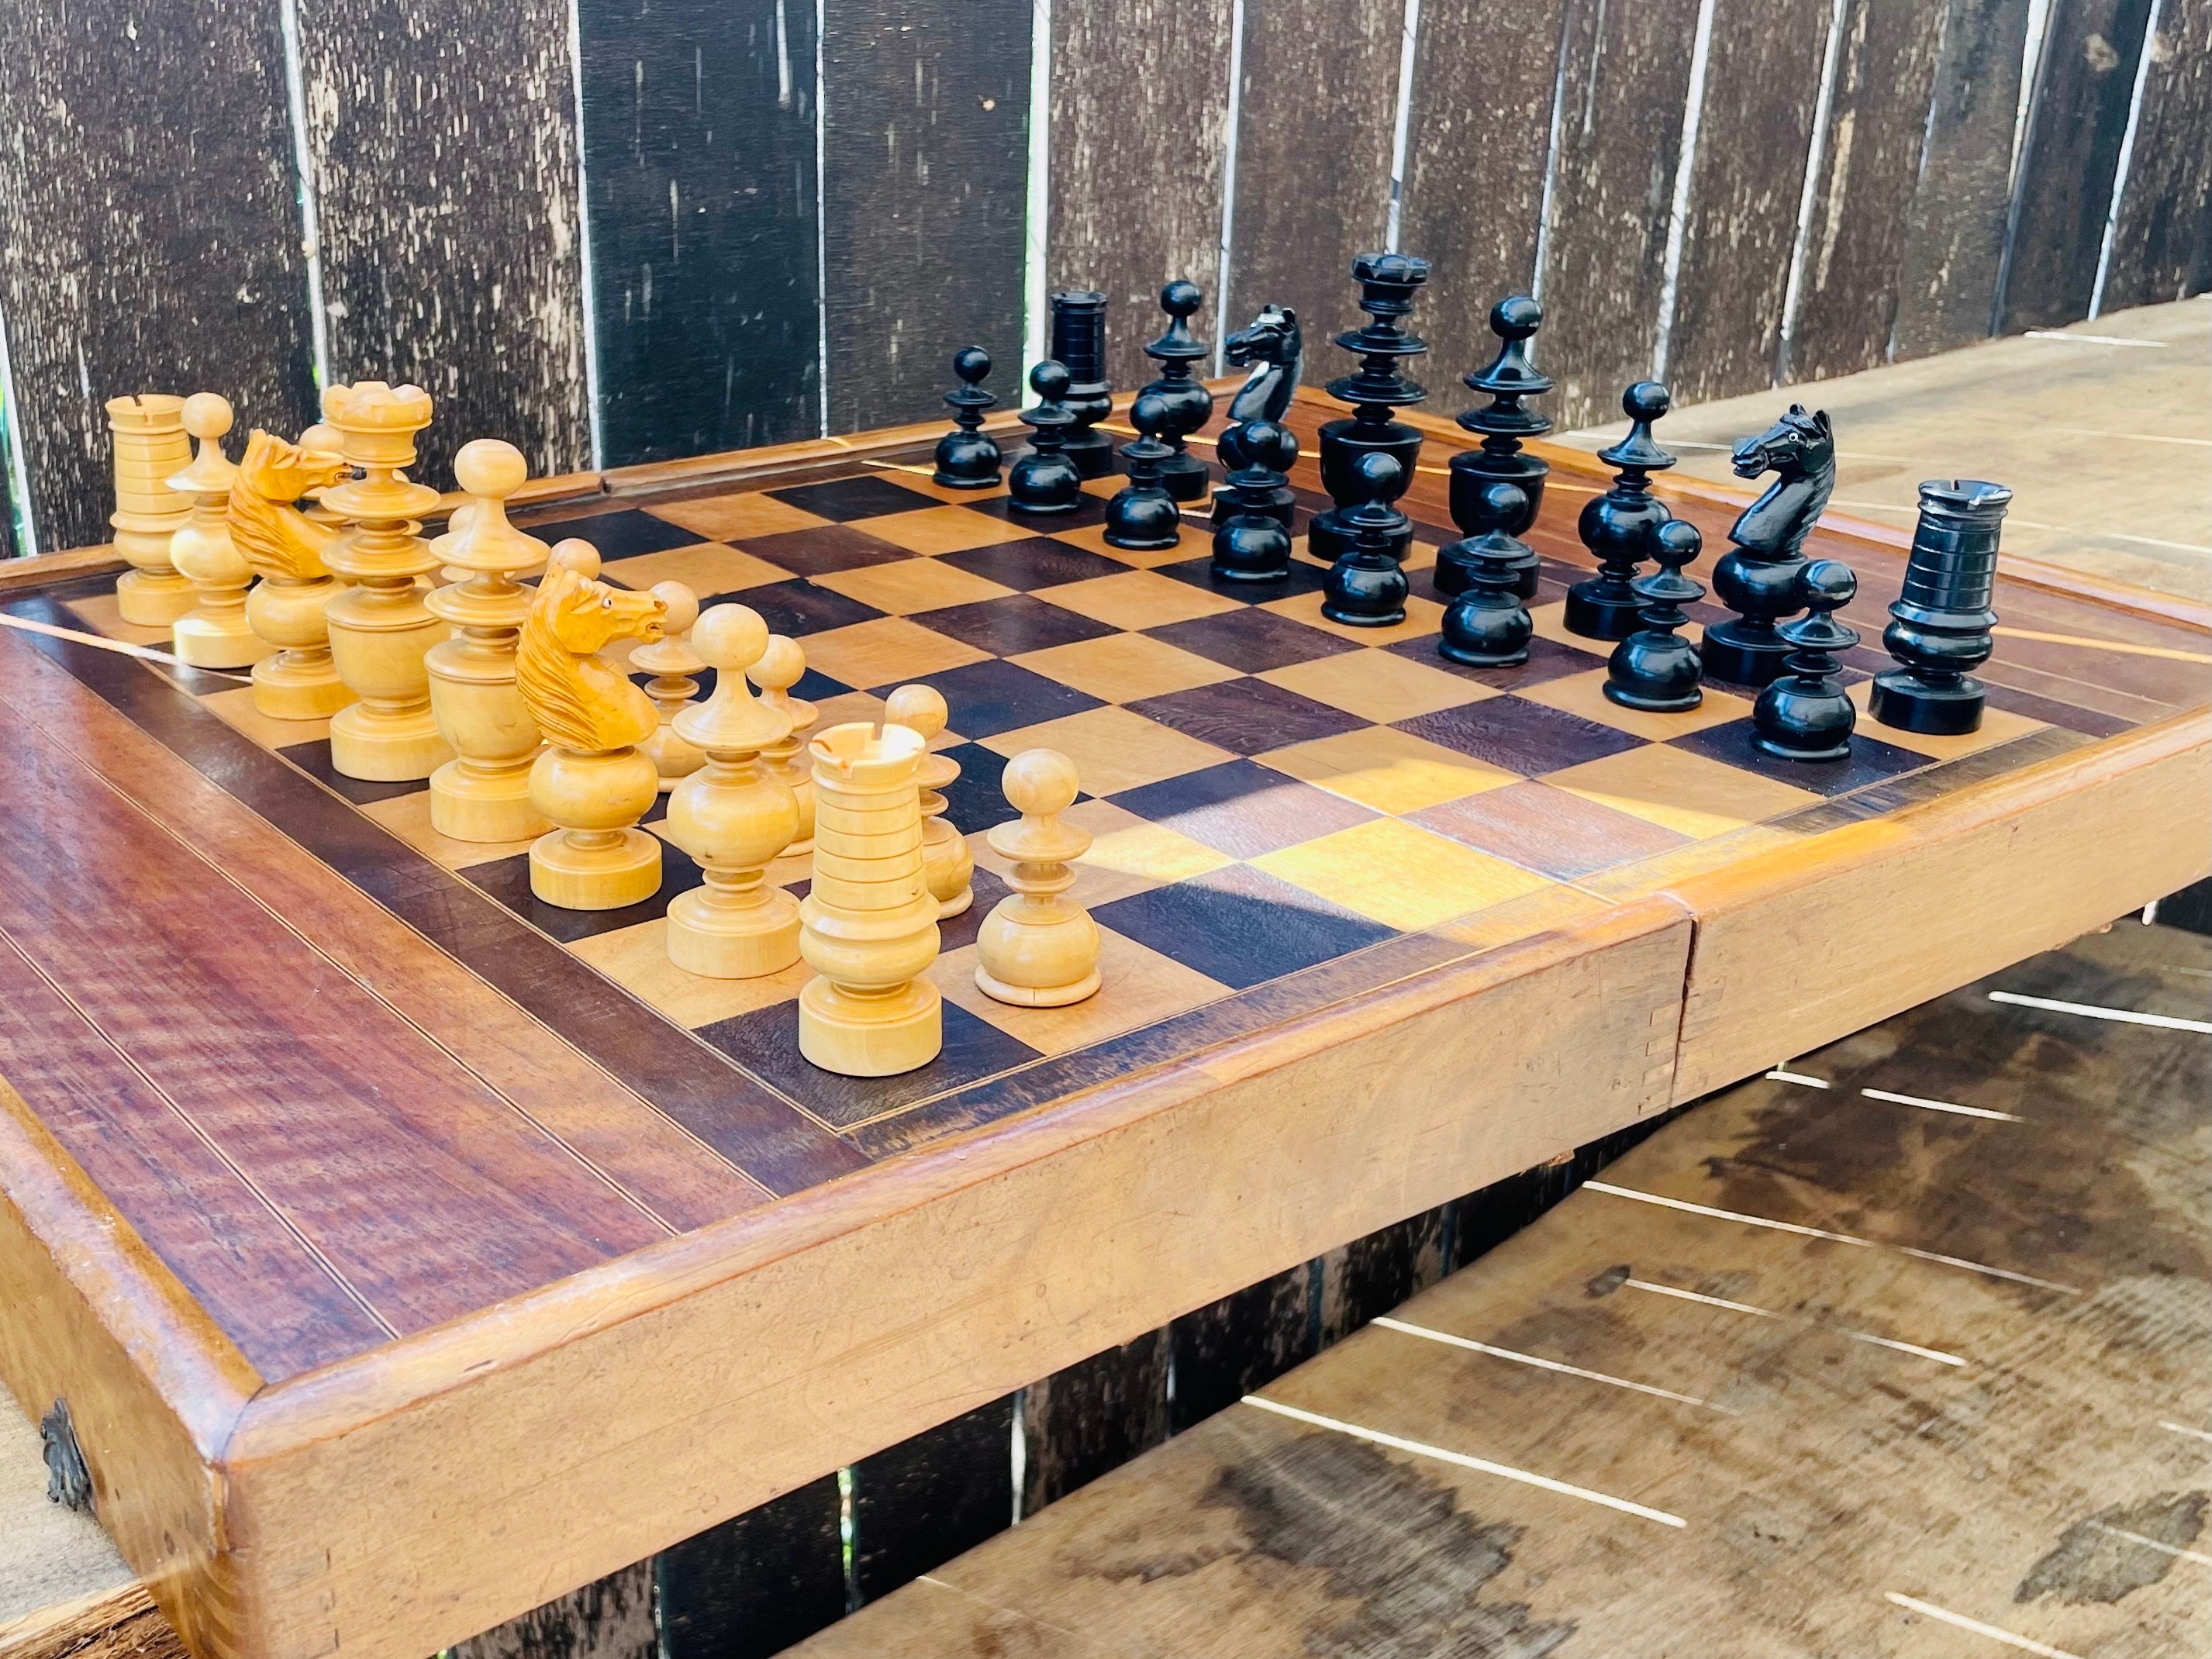 Vieux jeu d'échecs - Etsy France